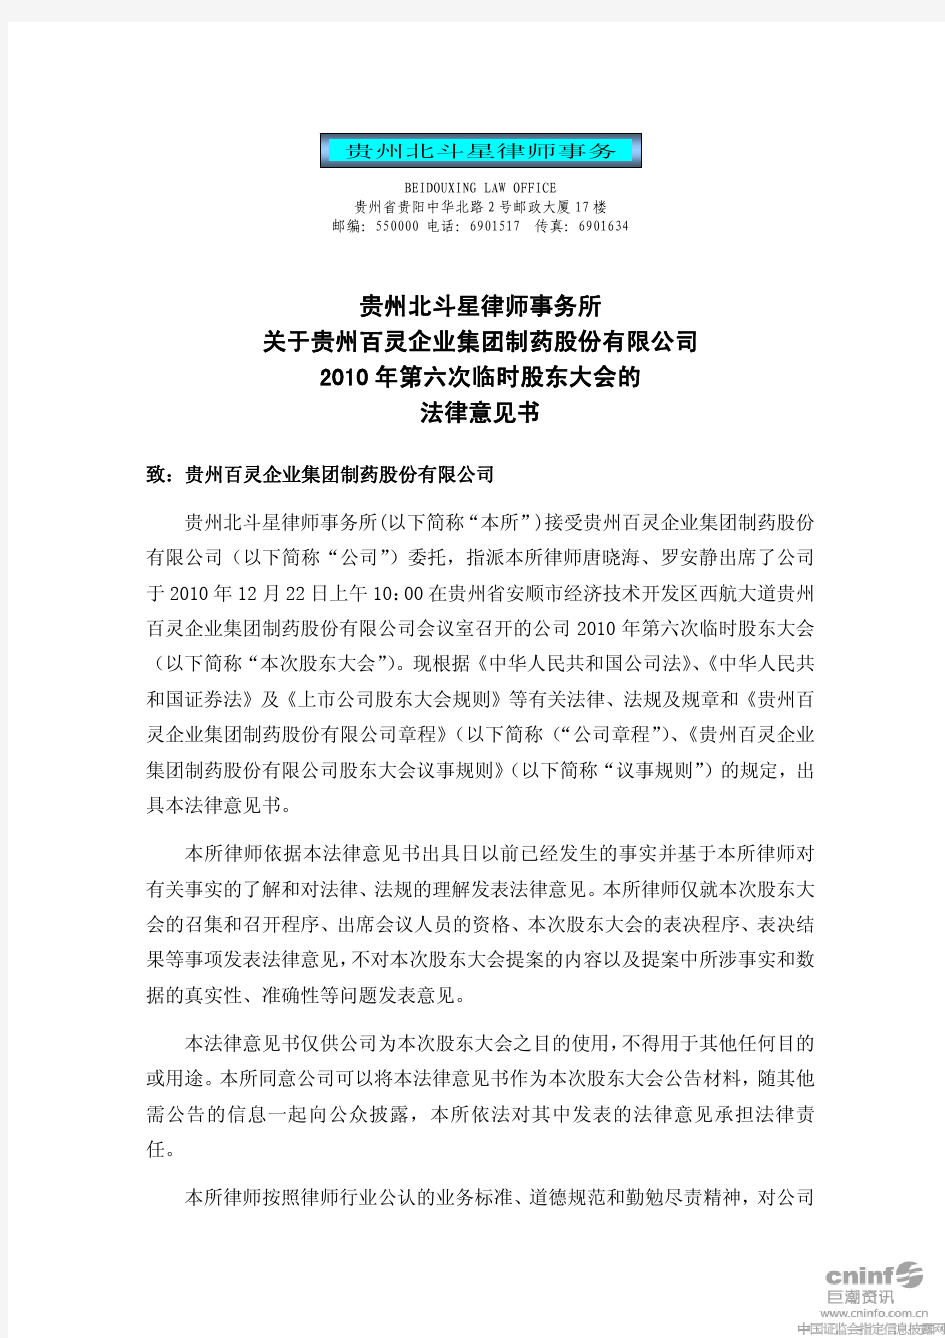 贵州百灵：2010年第六次临时股东大会的法律意见书 2010-12-23